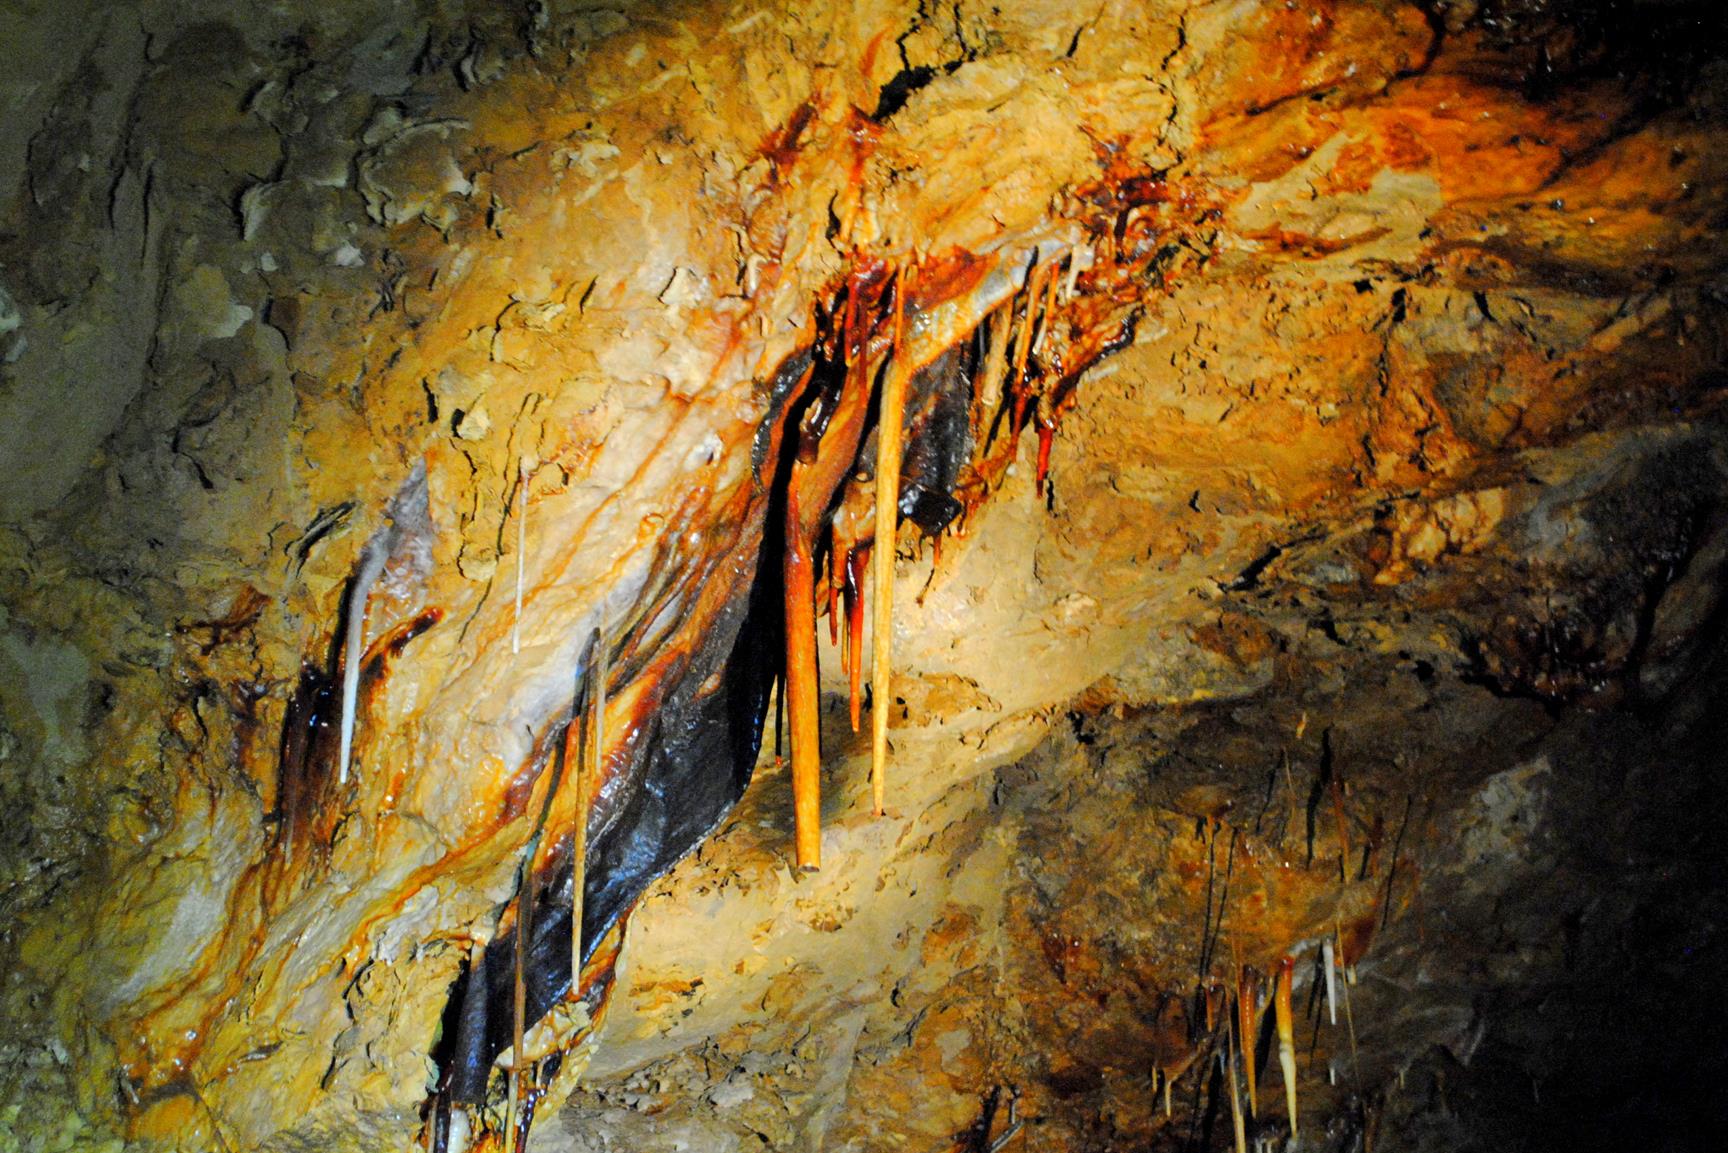 cueva-soplao-turismo-aventura-2